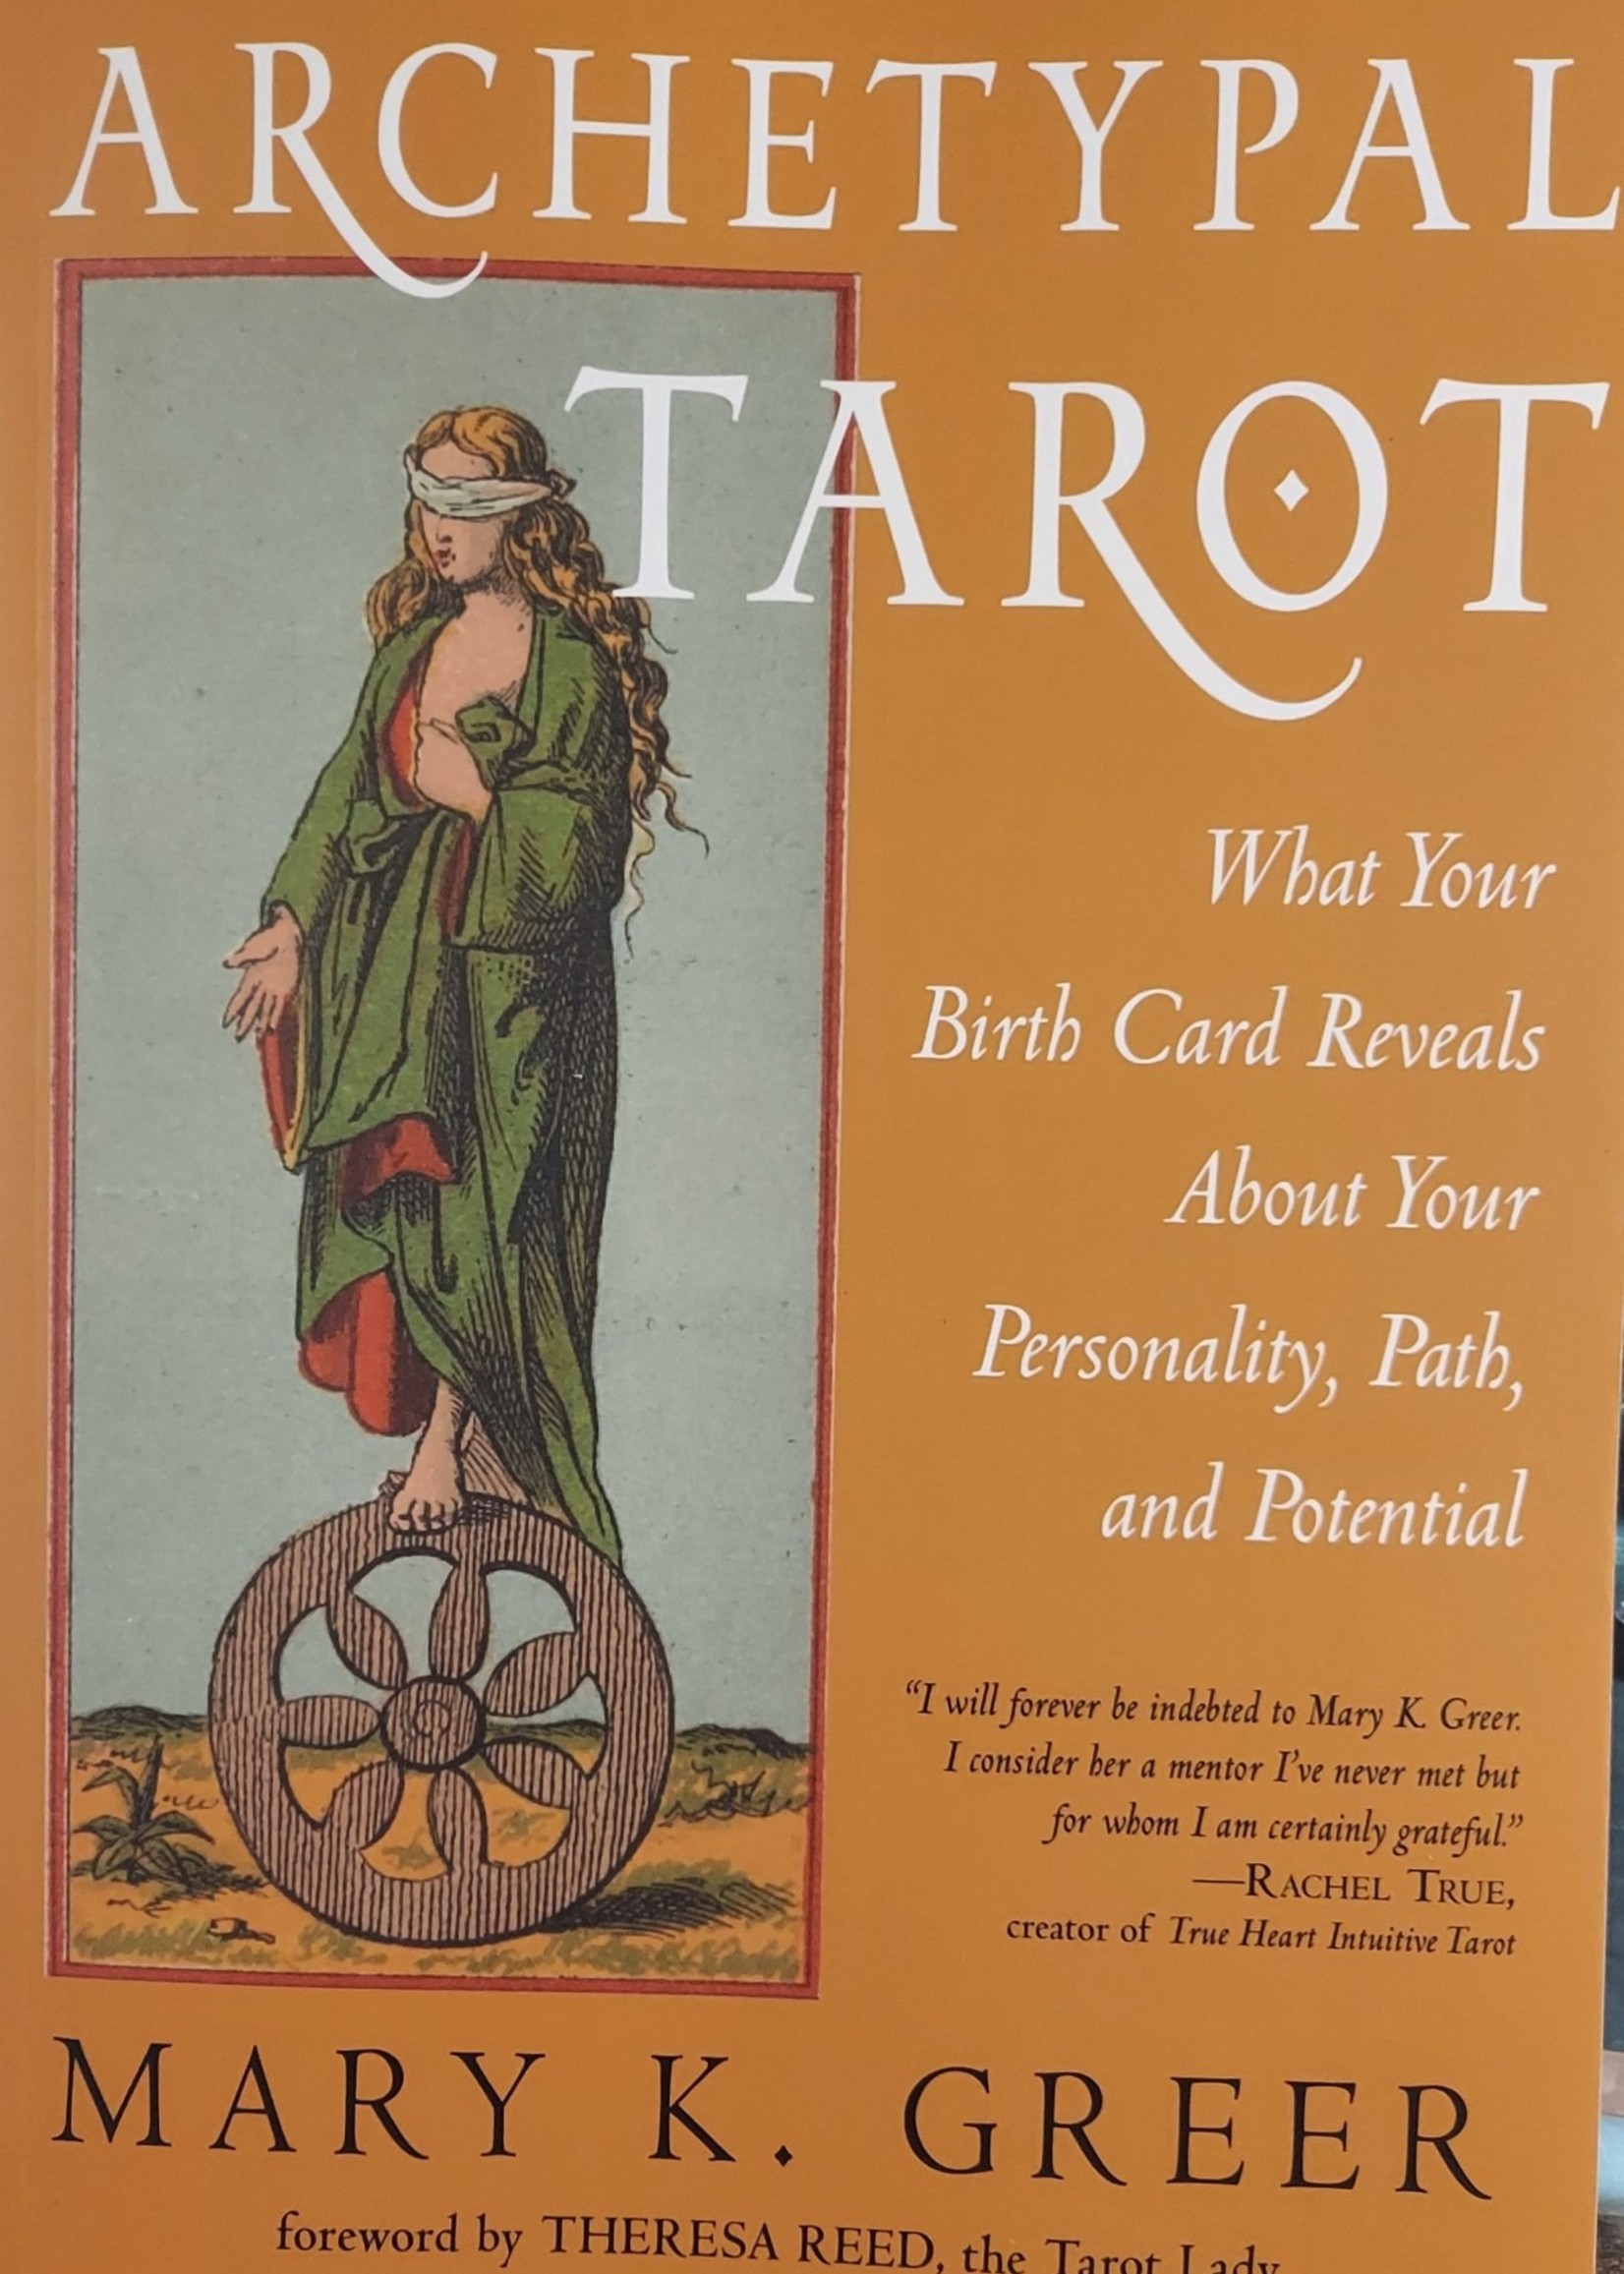 Archetypal Tarot-Author Mary K. Greer